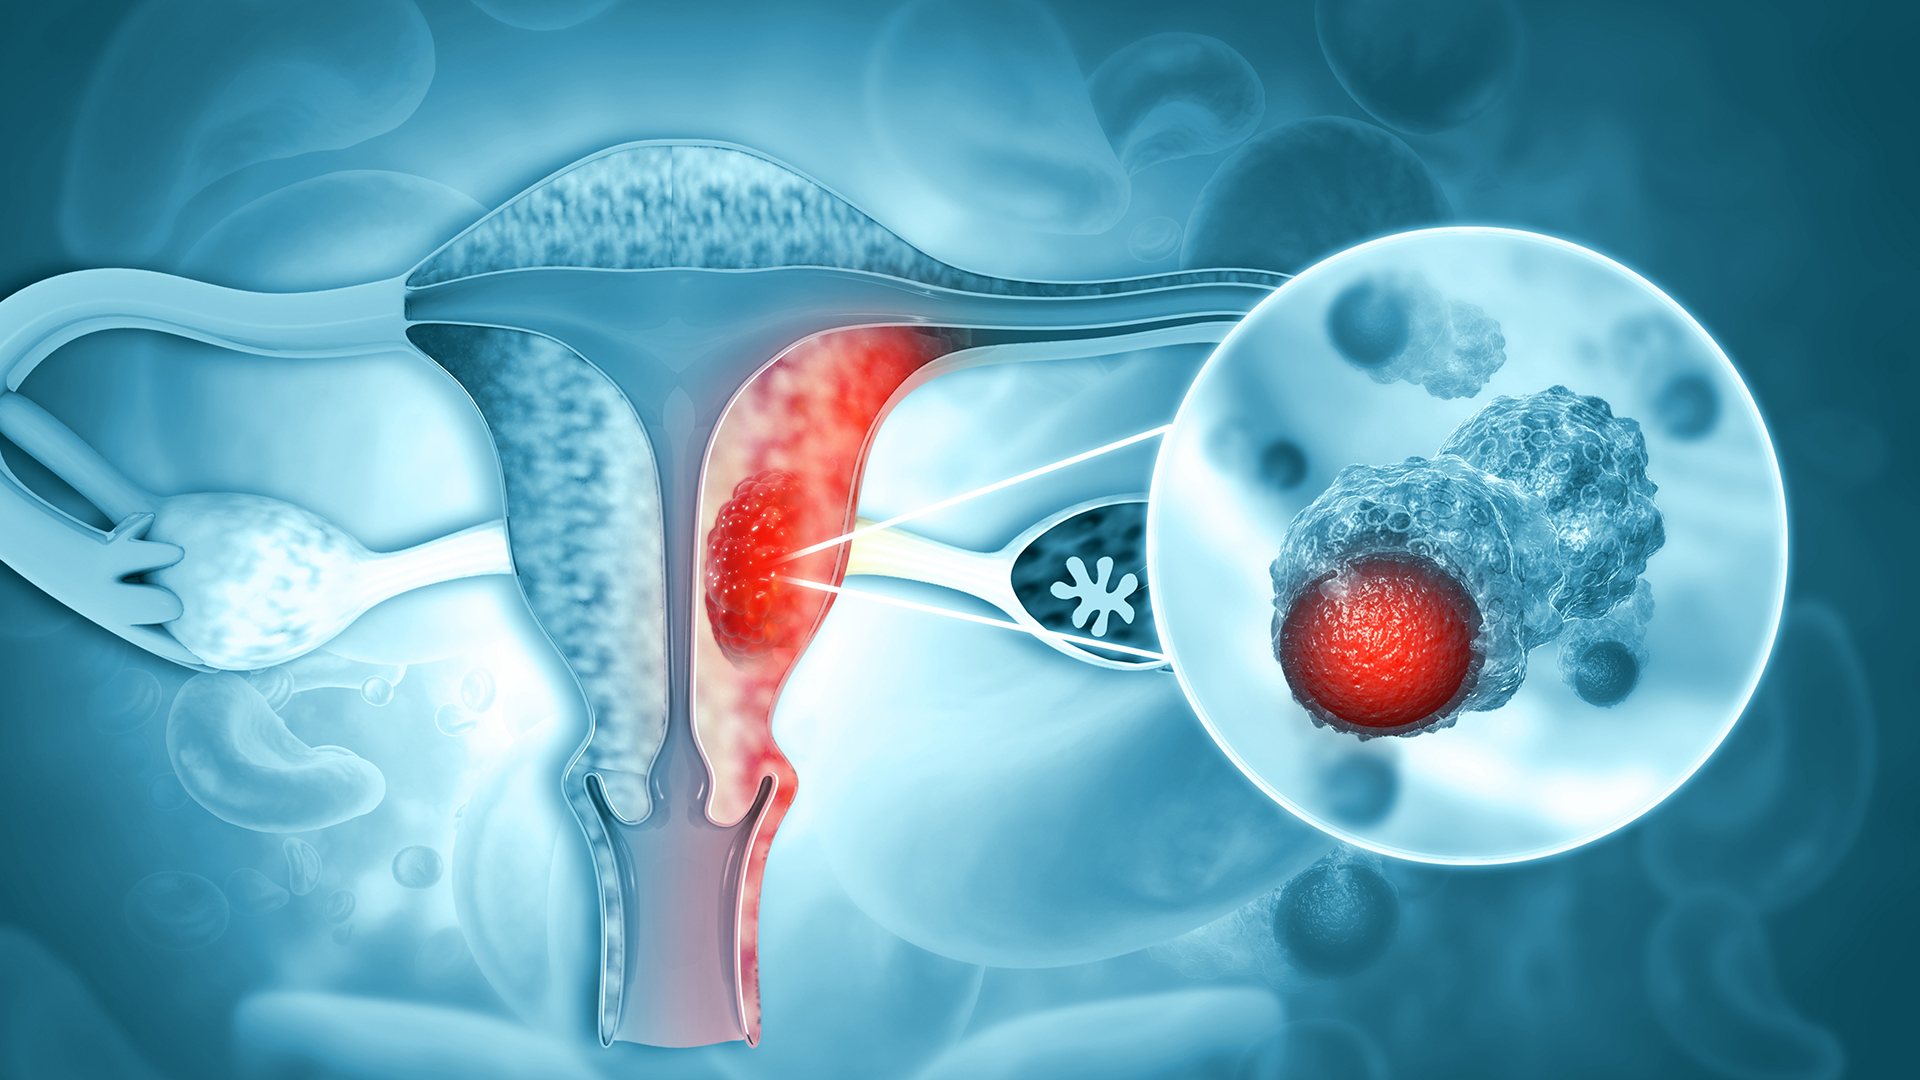 Testimonios de mujeres con cáncer de endometrio